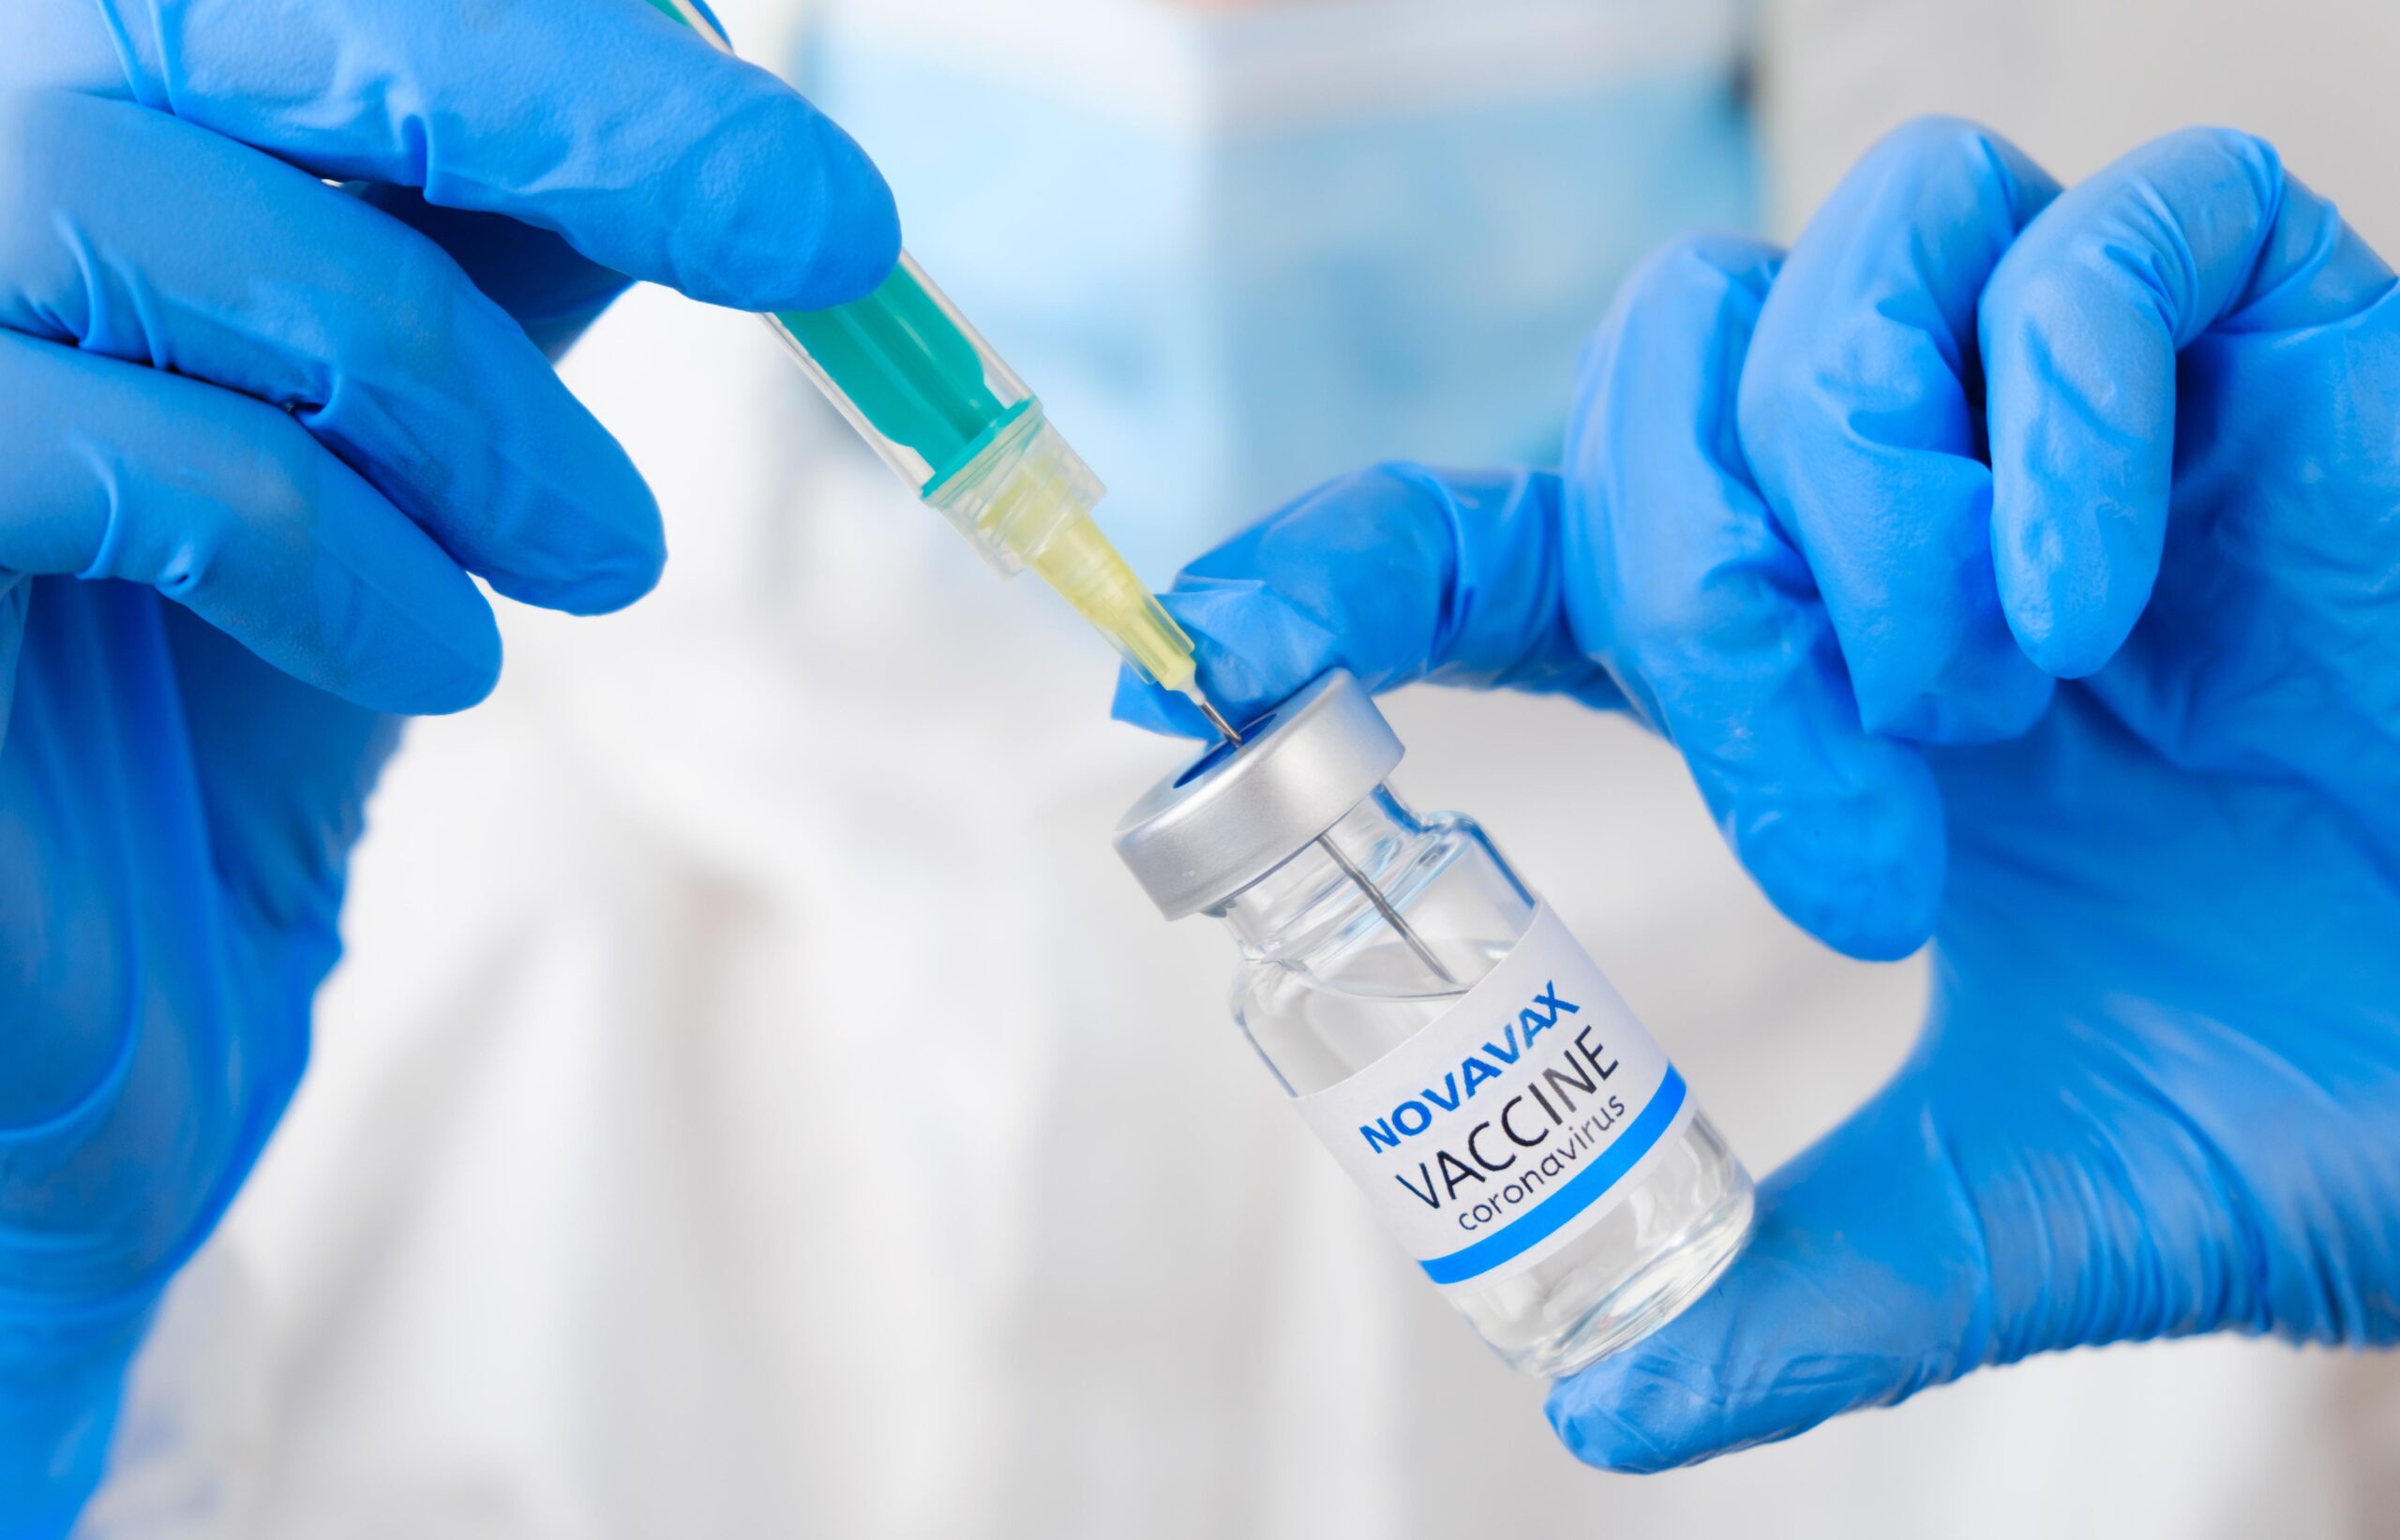 Nach den beiden mRNA-Vakzinen von Moderna und Biontech/Pfizer ist nun ein dritter an die XBB.1.5-Variante angepasster Corona-Impfstoff in der EU zugelassen worden: Die protein-basierte Vakzine Nuvaxovid XBB.1.5 des Herstellers Novavax. Was sagt die STIKO zu dem neuen Impfstoff?